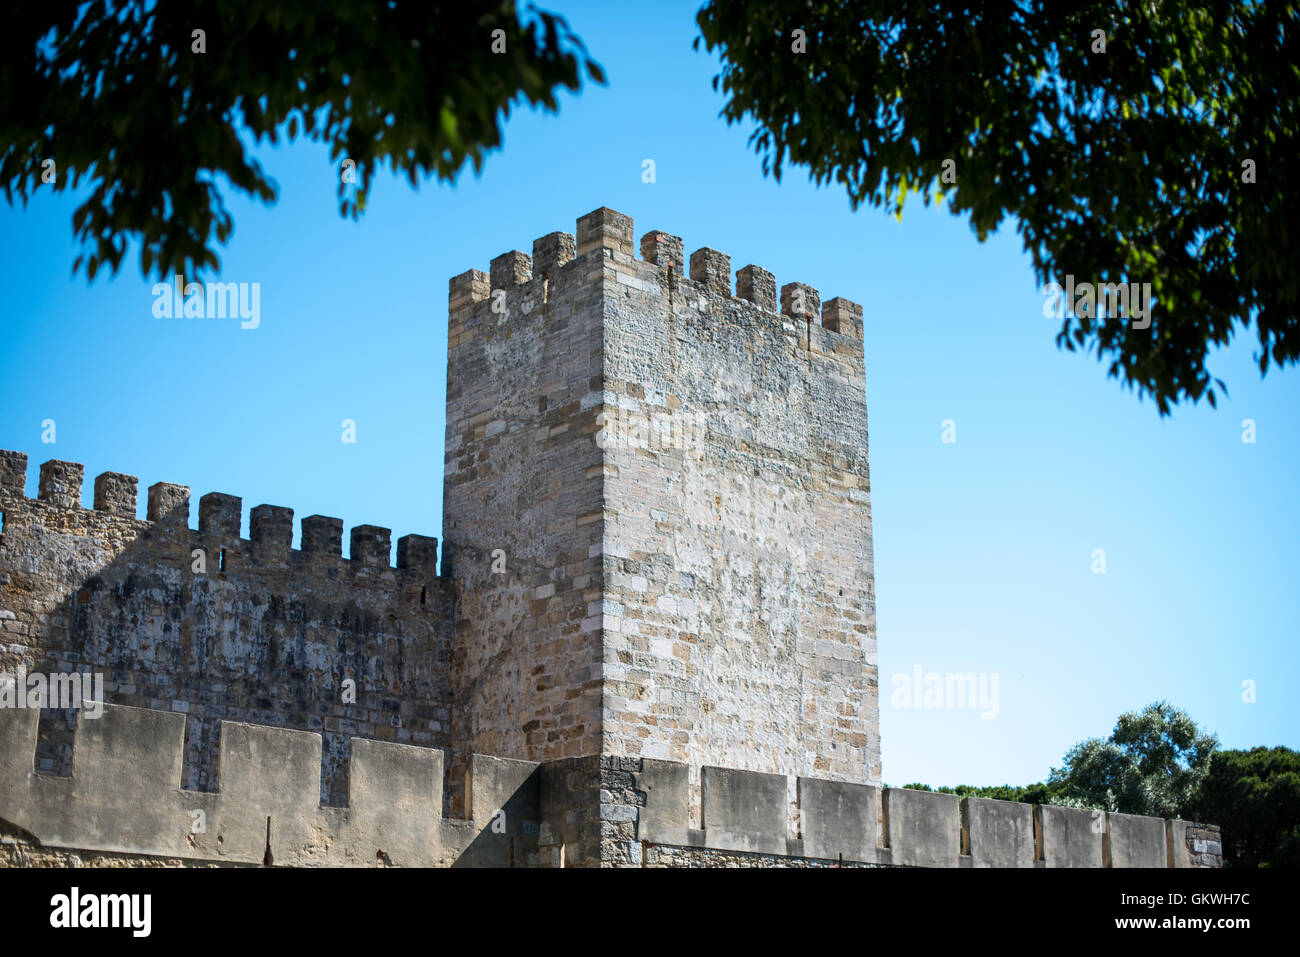 Lisbonne, Portugal - Assis au sommet d'une colline surplombant le centre de Lisbonne, le château São Jorge (ou château de São Jorge ou Saint George Castle) est un château mauresque. Fortifications ont existé sur le site à des milliers d'années, et l'actuelle date de murs distinctif du 14ème siècle. Banque D'Images